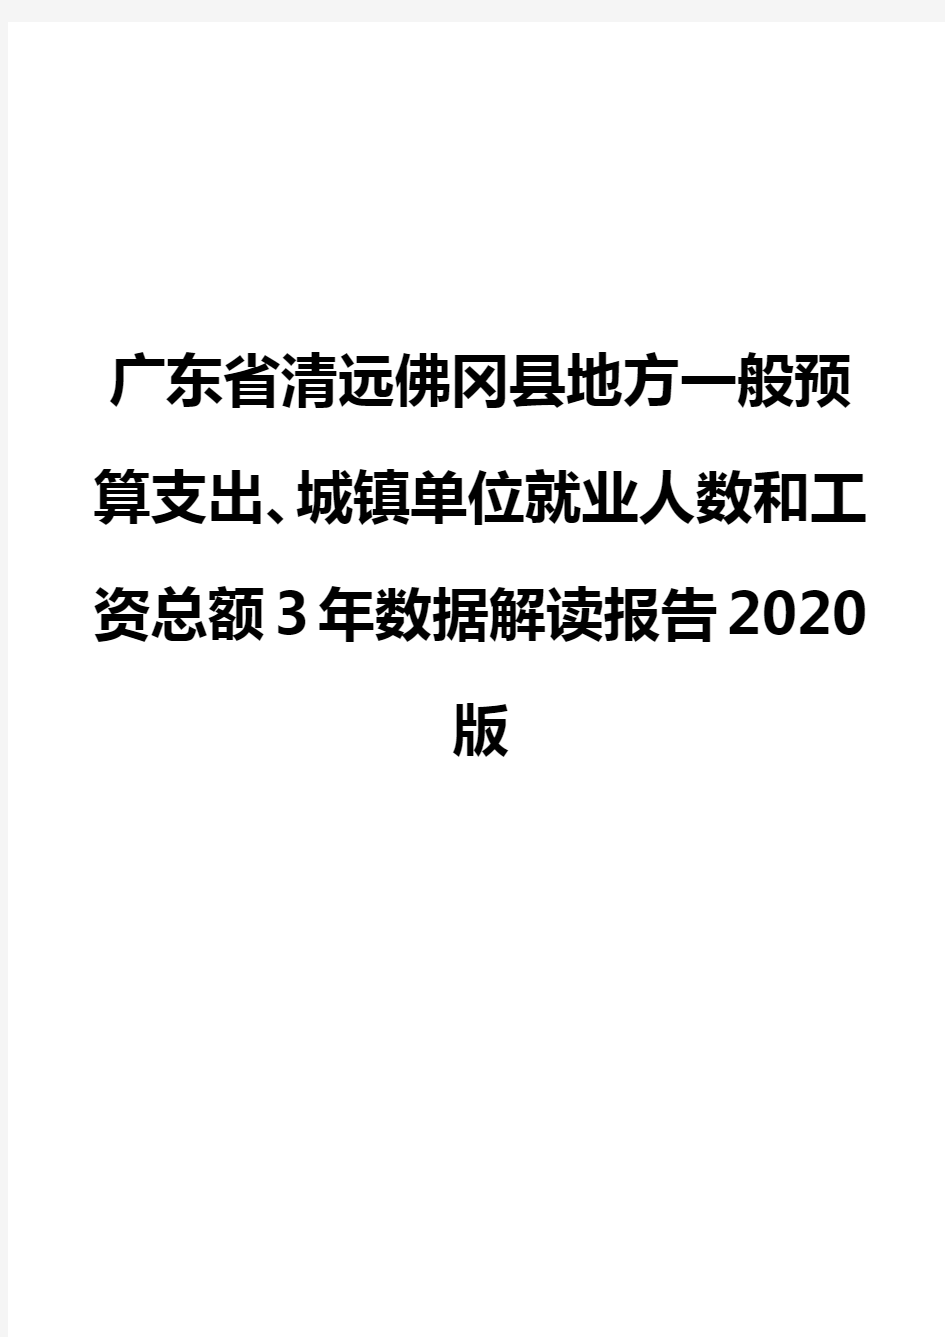 广东省清远佛冈县地方一般预算支出、城镇单位就业人数和工资总额3年数据解读报告2020版